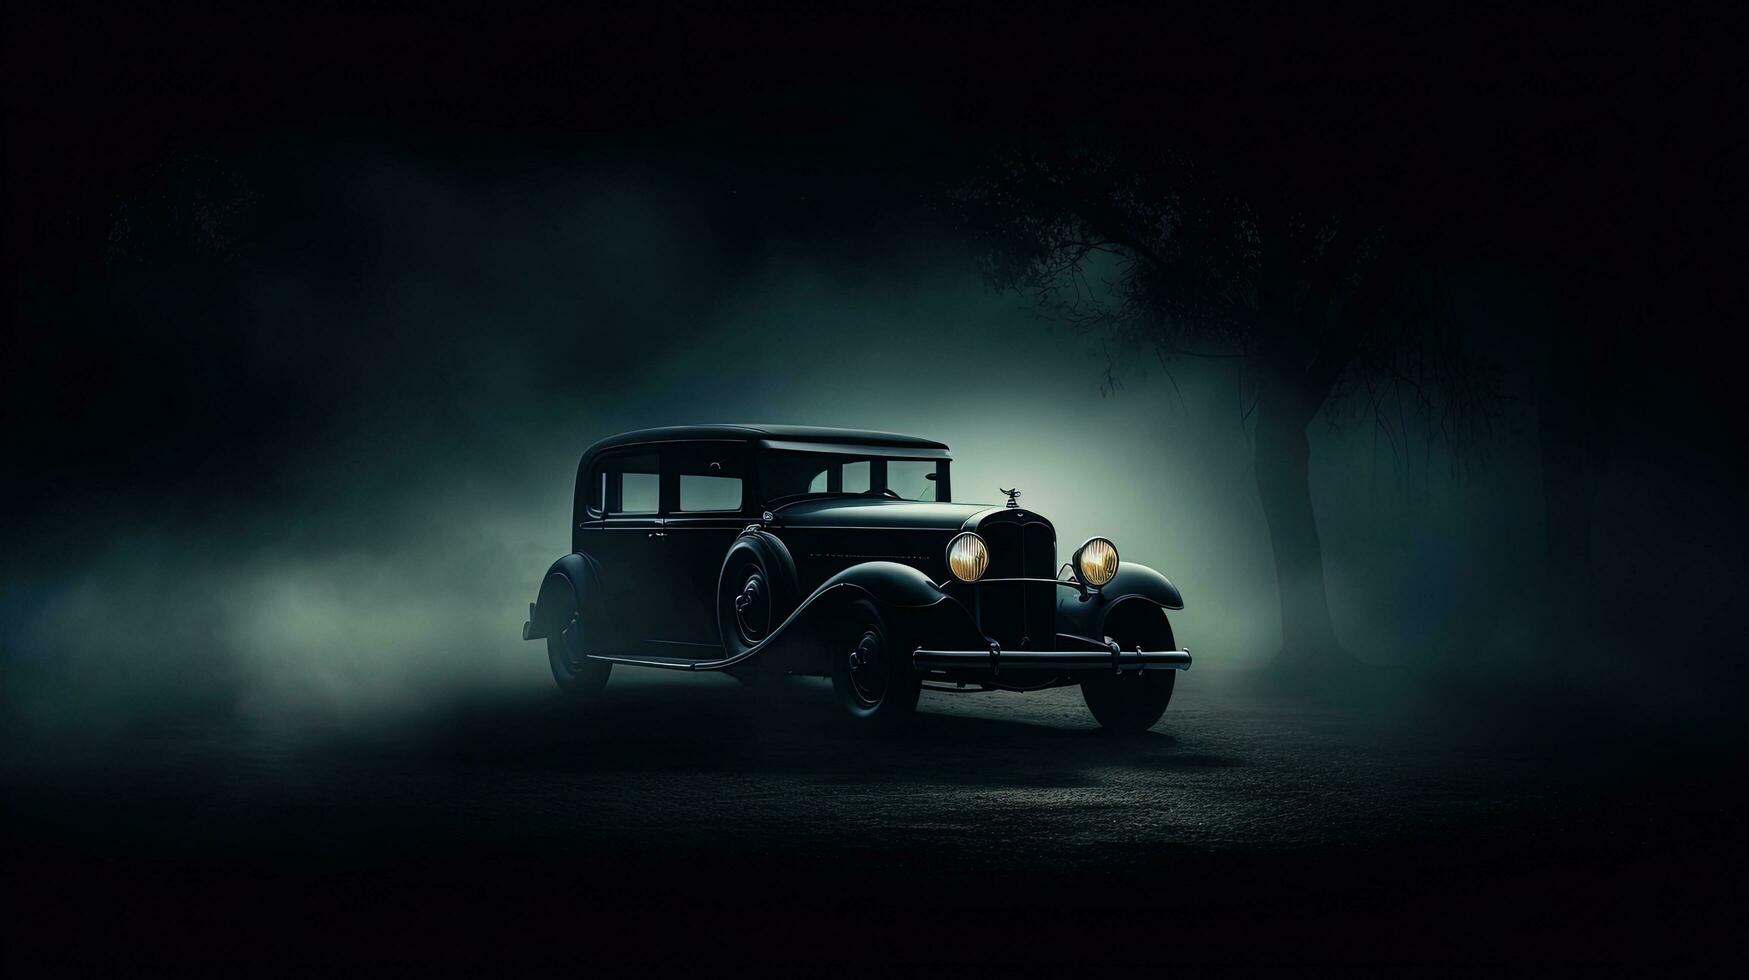 selektiv Fokus auf dunkel Hintergrund präsentieren ein Jahrgang Auto Silhouette mit glühend Beleuchtung im niedrig Licht foto